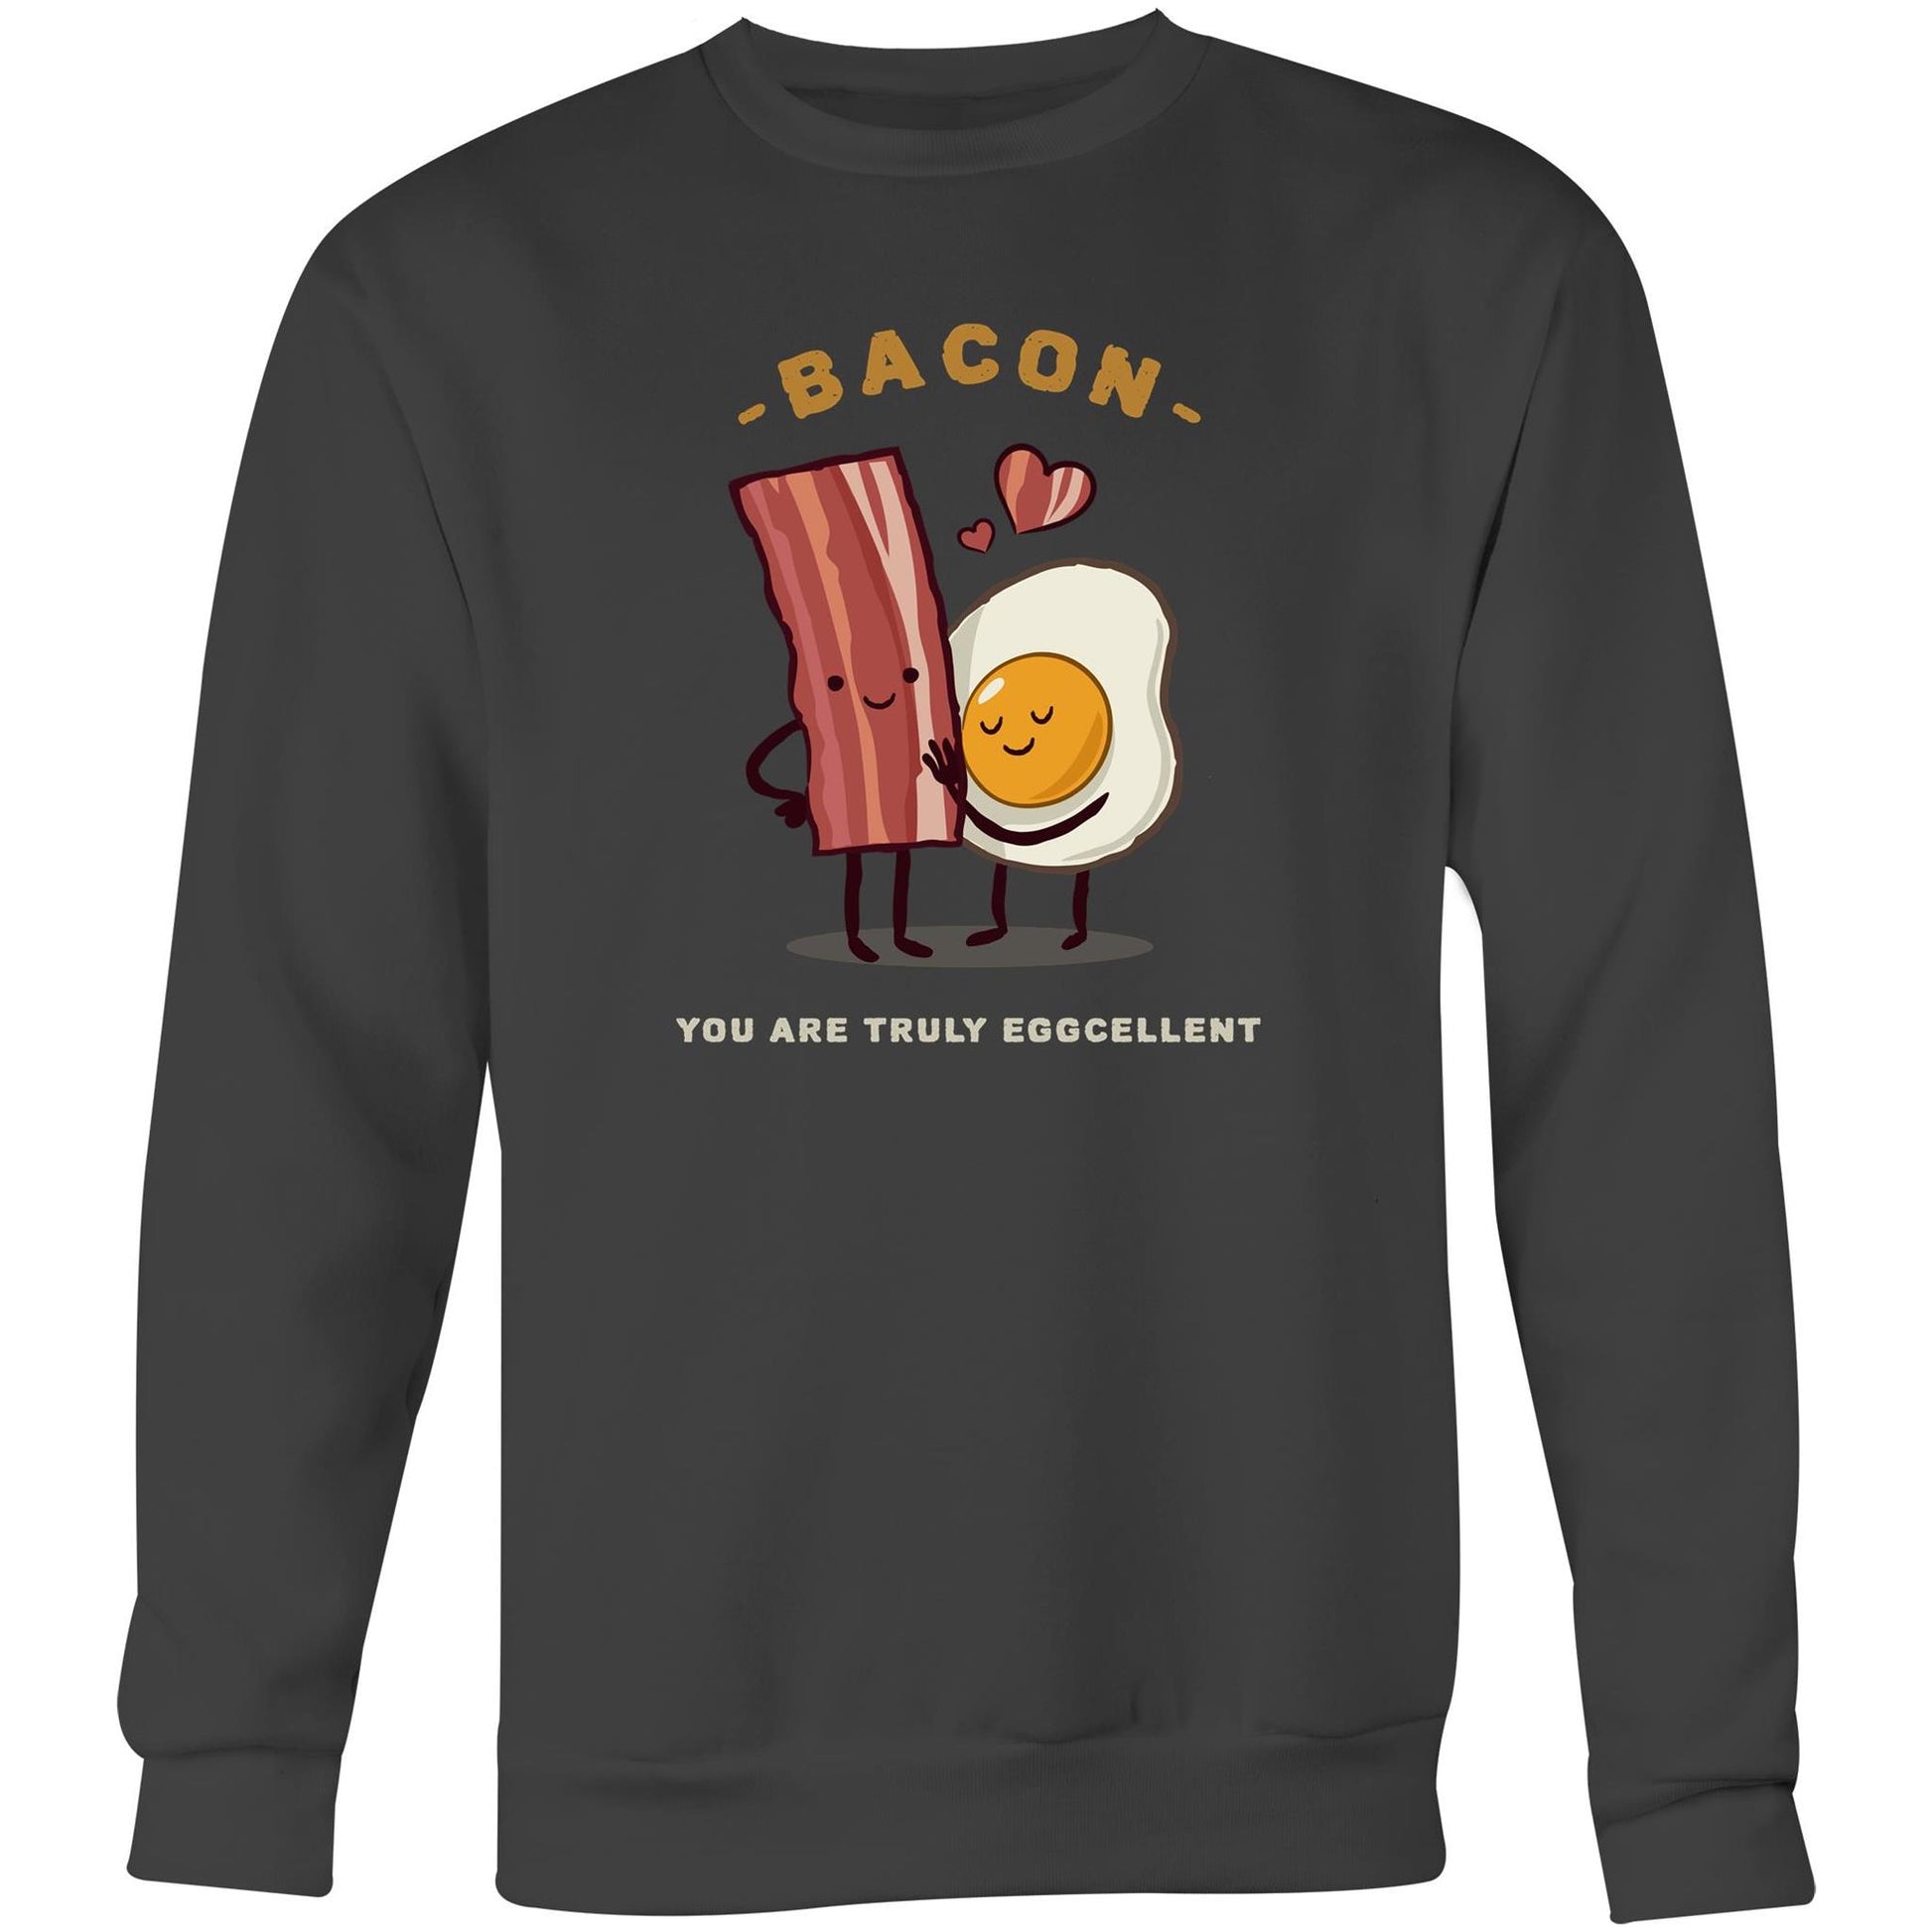 Bacon, You Are Truly Eggcellent - Crew Sweatshirt Coal Sweatshirt Food